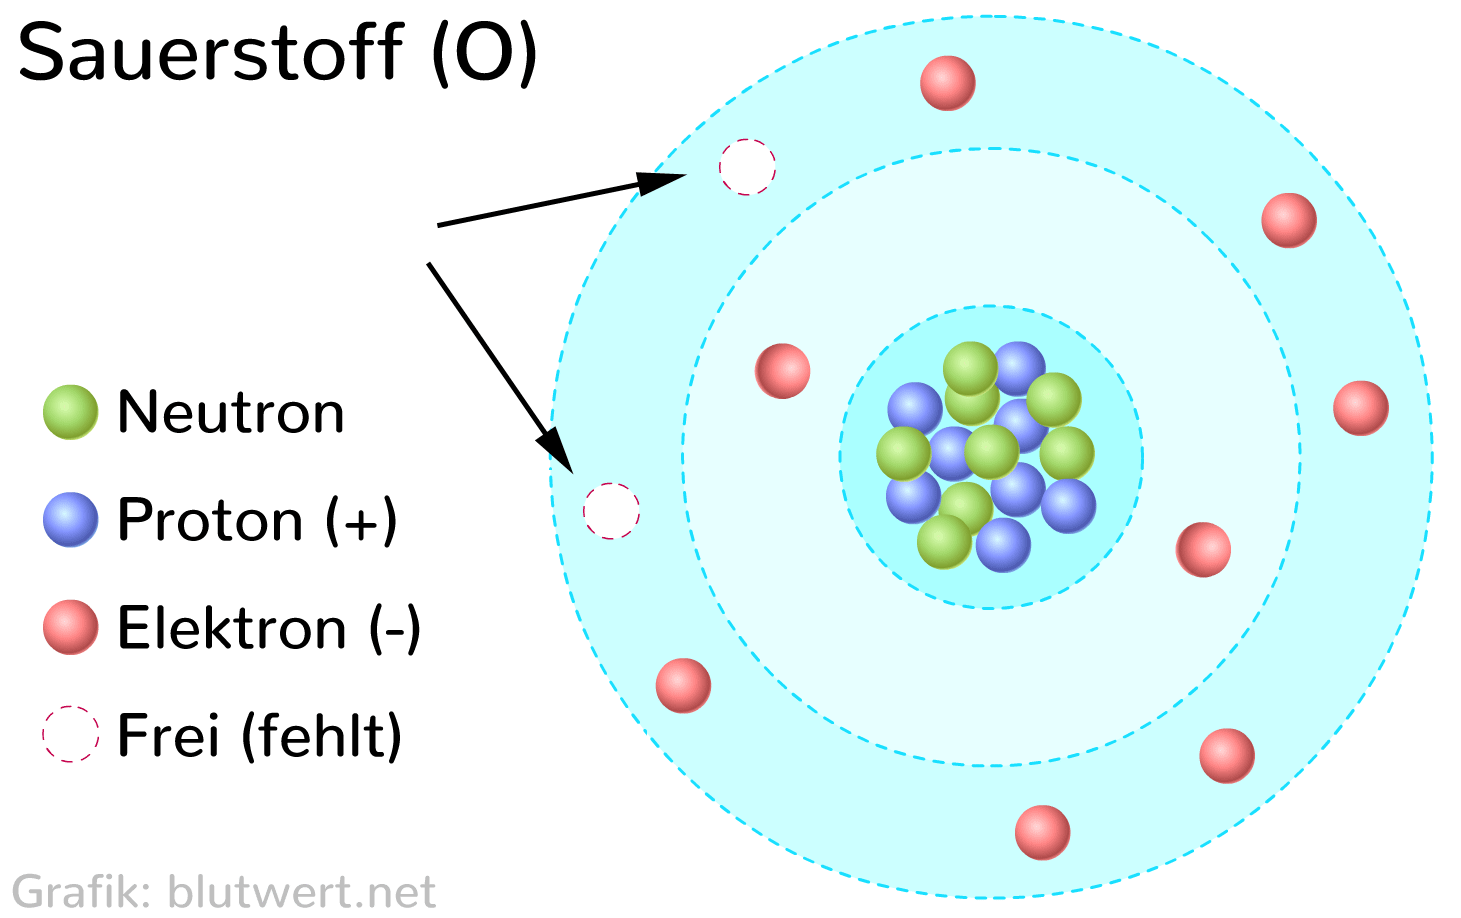 Sauerstoff - Element O und Molekül O<sub>2</sub>